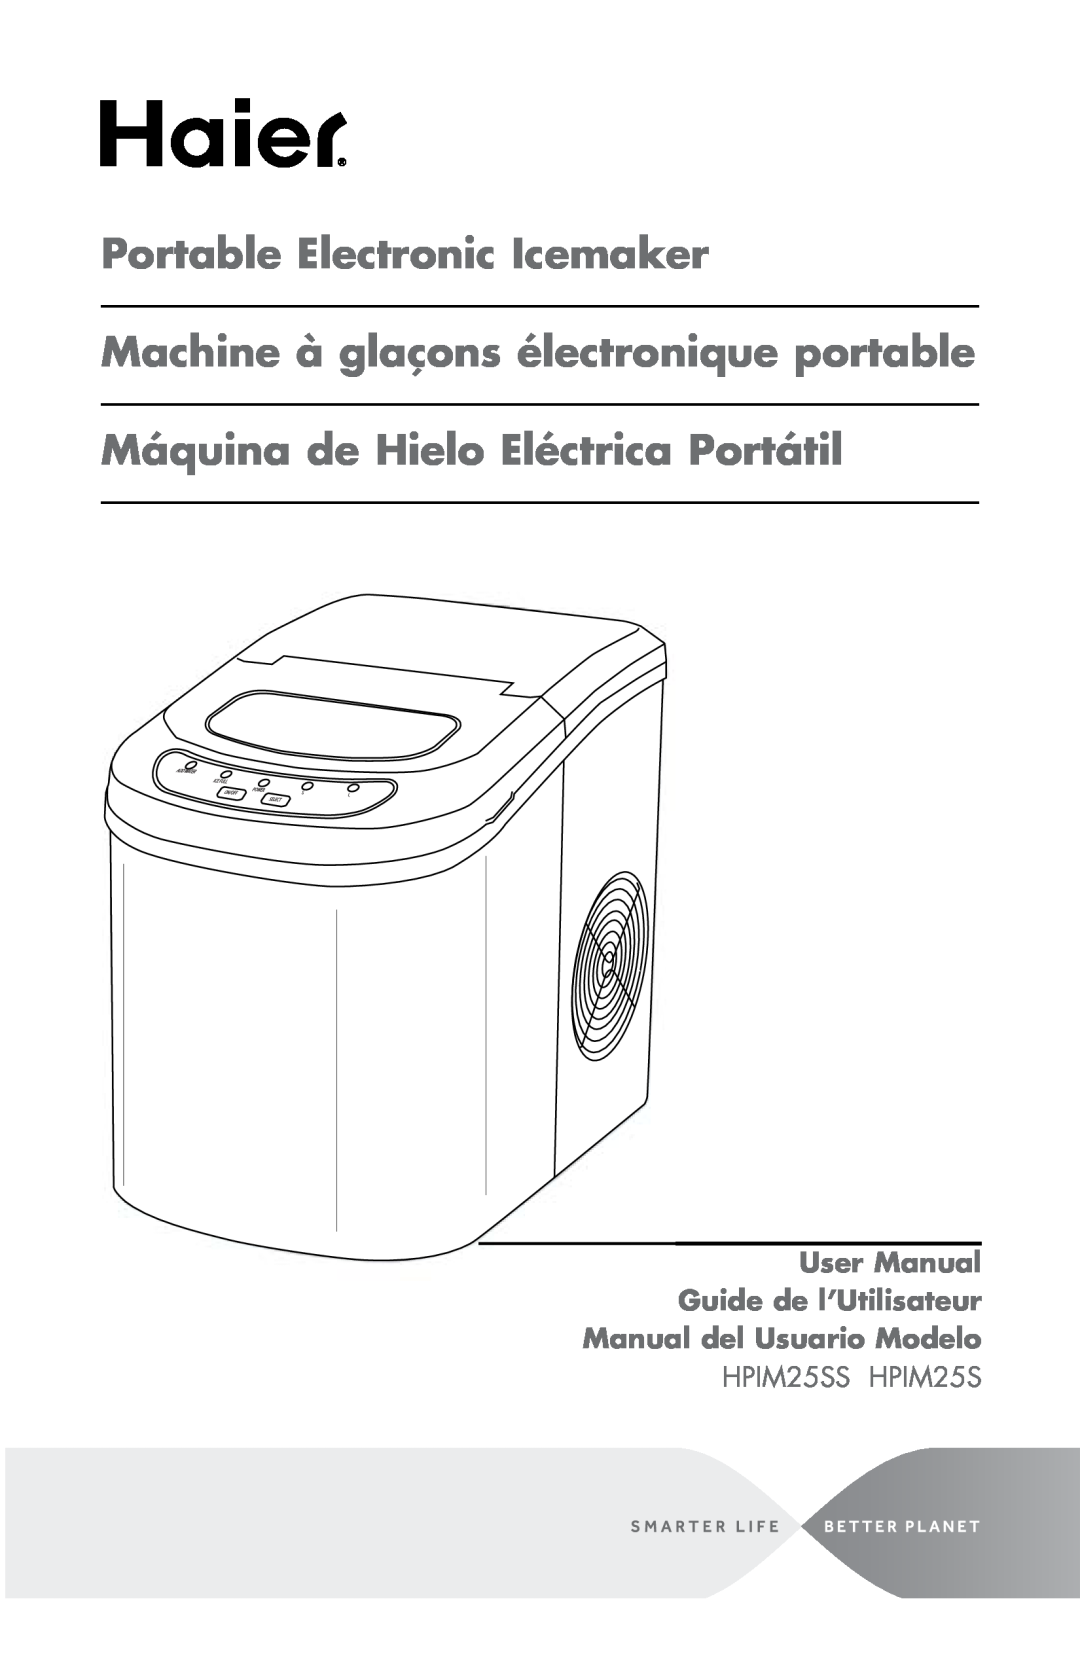 Haier HPIM25SS user manual Portable Electronic Icemaker Machine à glaçons électronique portable 